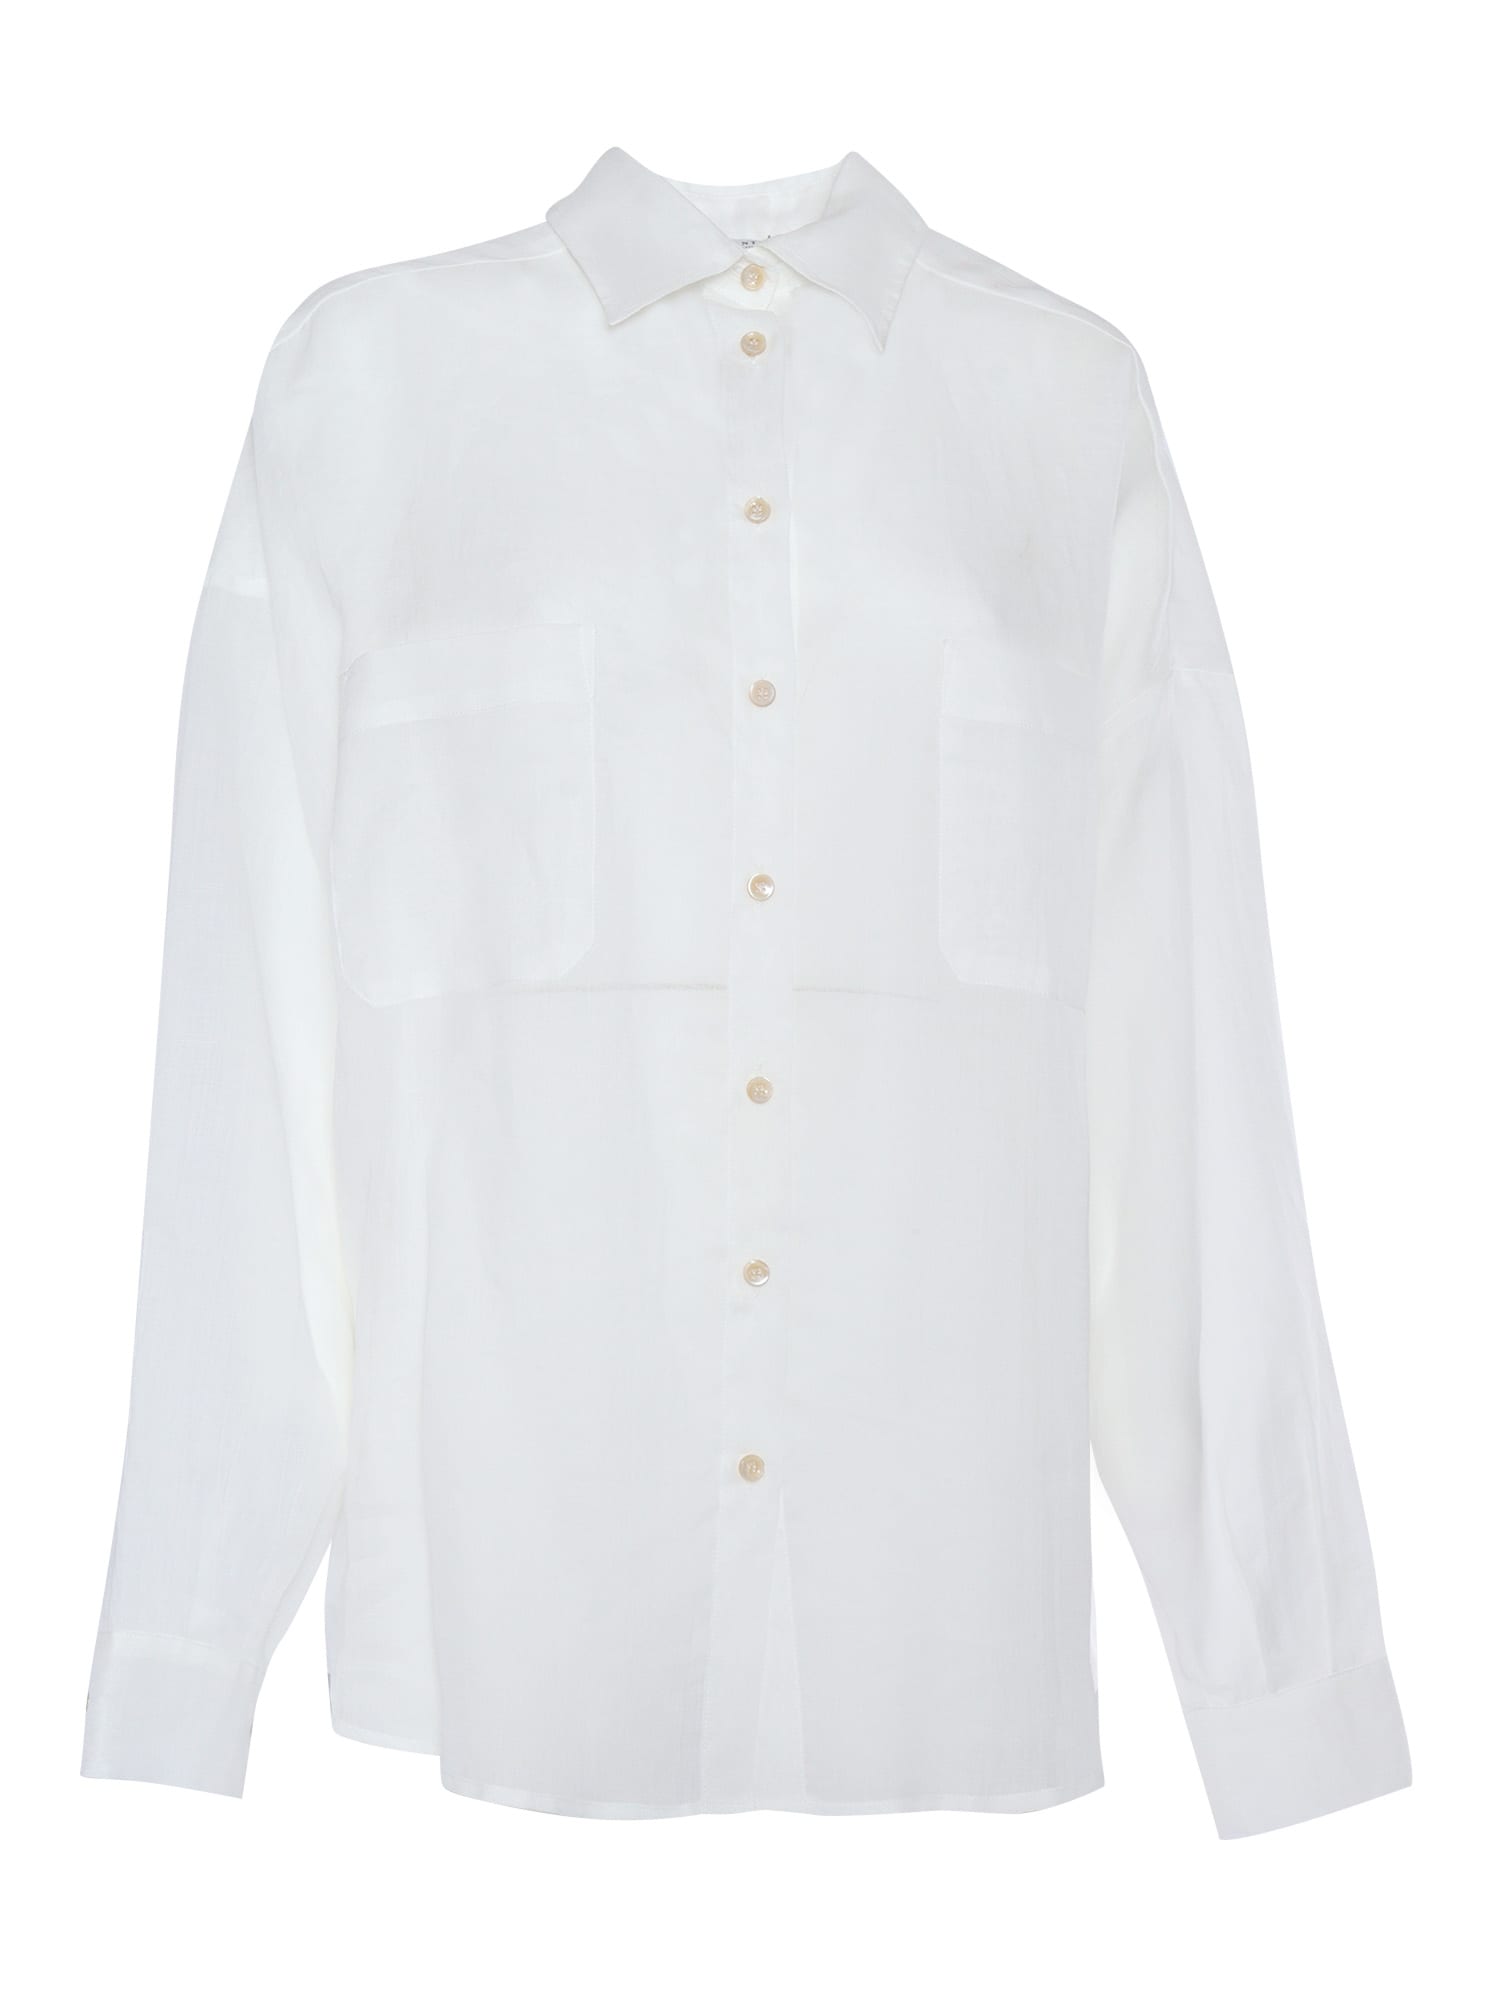 Shop Ballantyne White Shirt